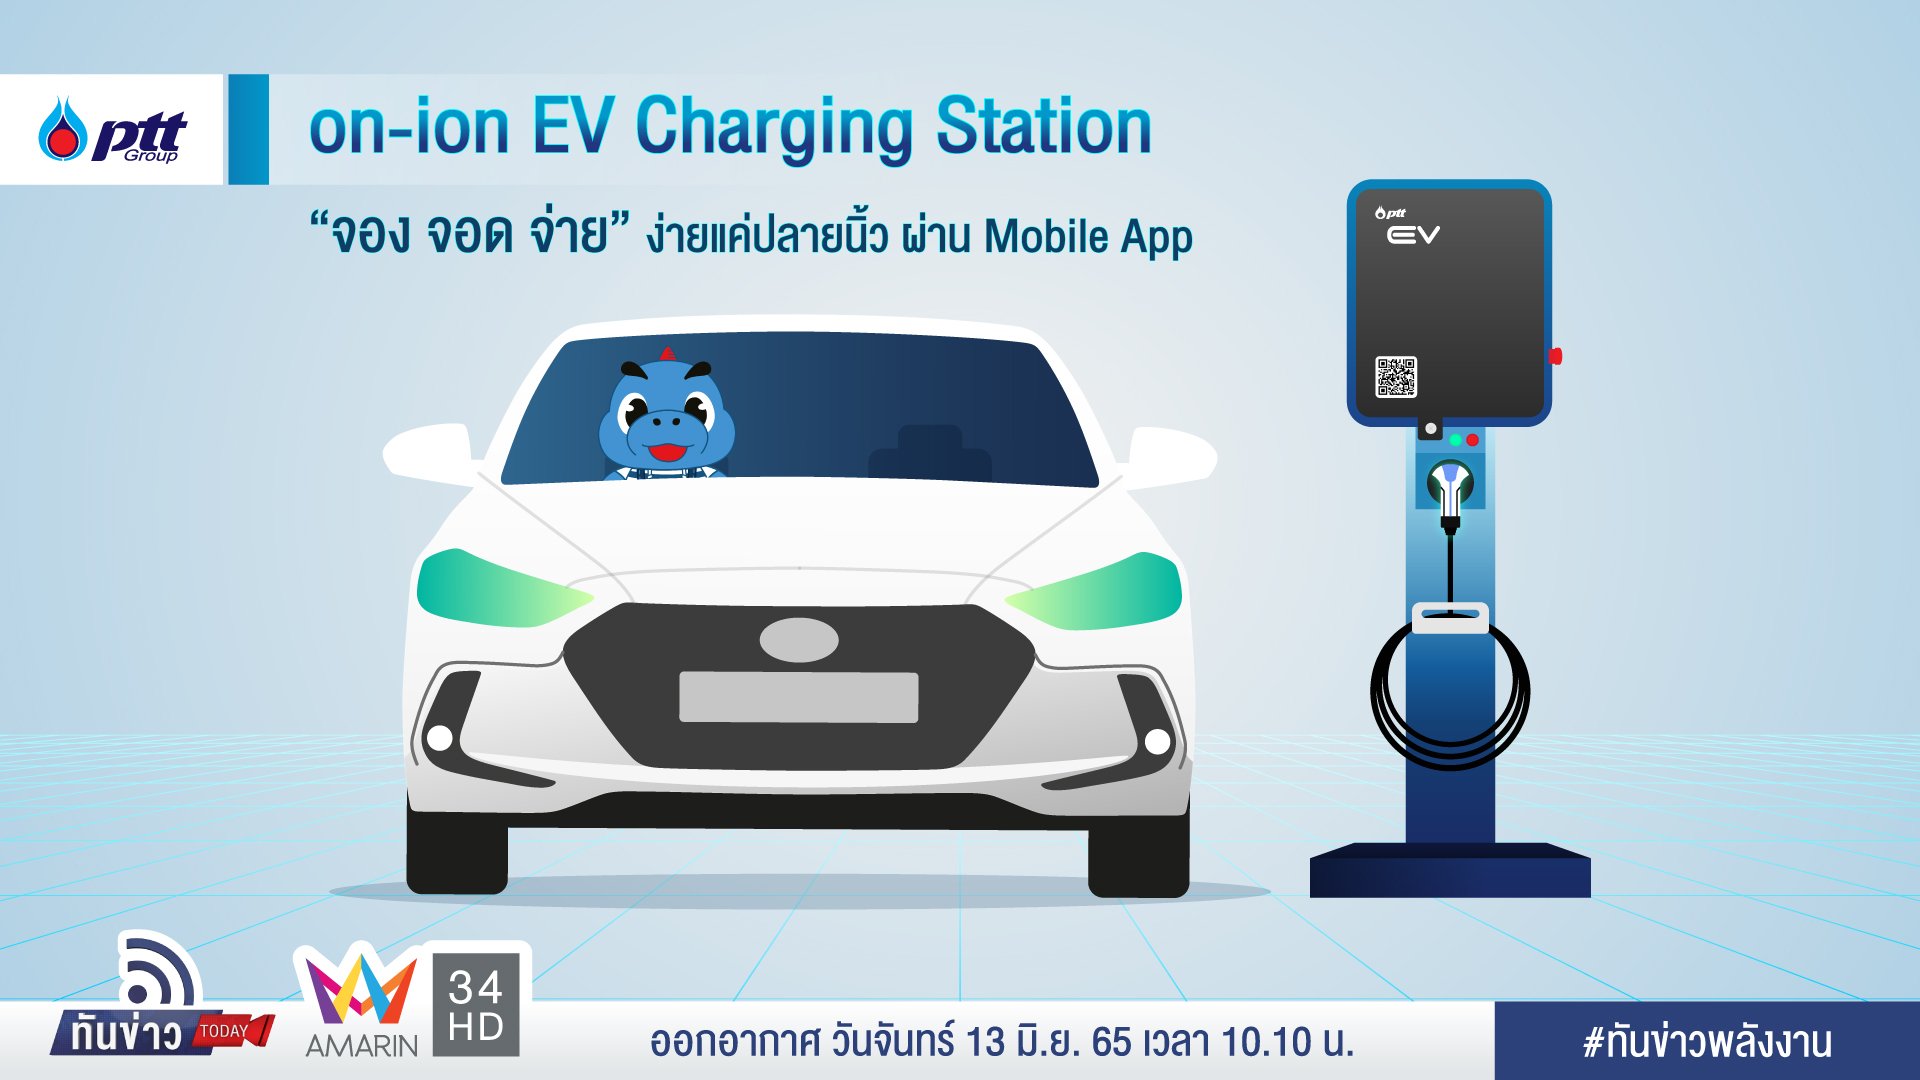 “on-ion EV Charging Station